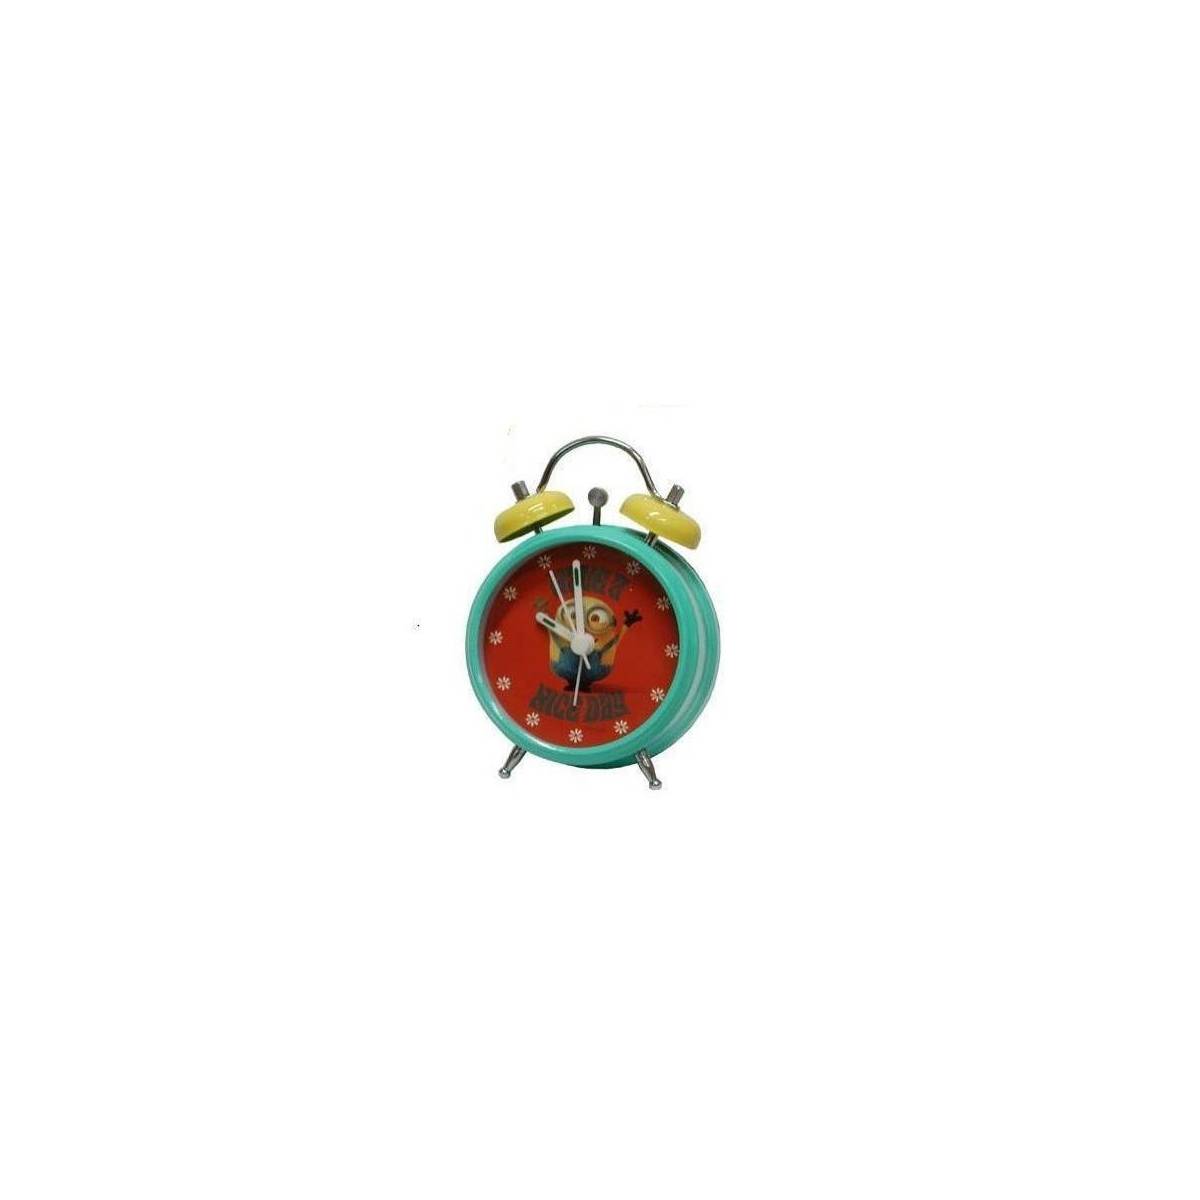 Les Minions - Réveil avec Alarme 12 cm - Vert, Jaune et Rouge